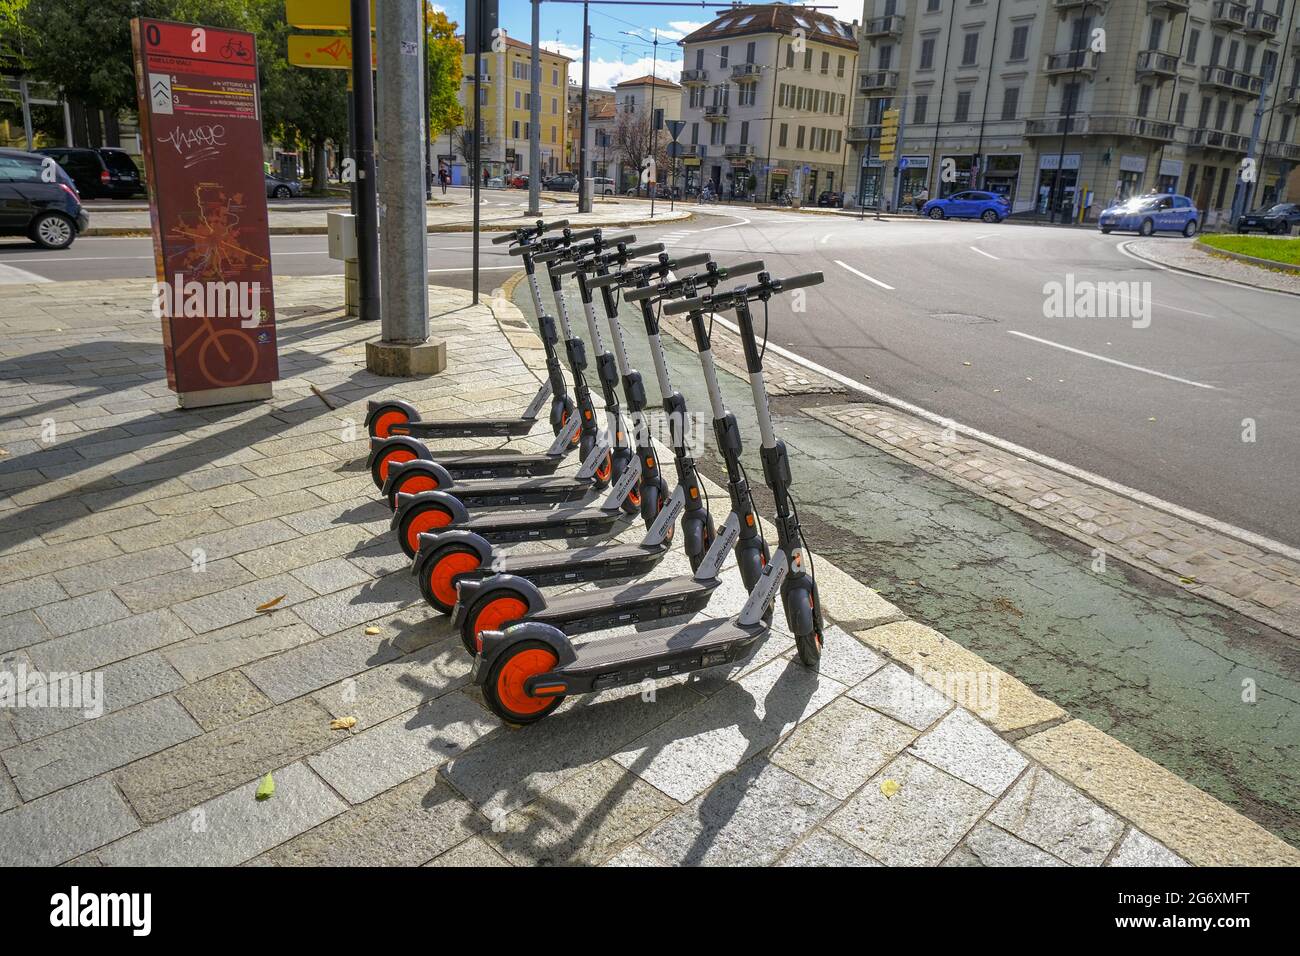 Ottobre 2020 Parma, Italia: Scooter elettrici in via della città pronti per il noleggio con app mobile. Foto Stock